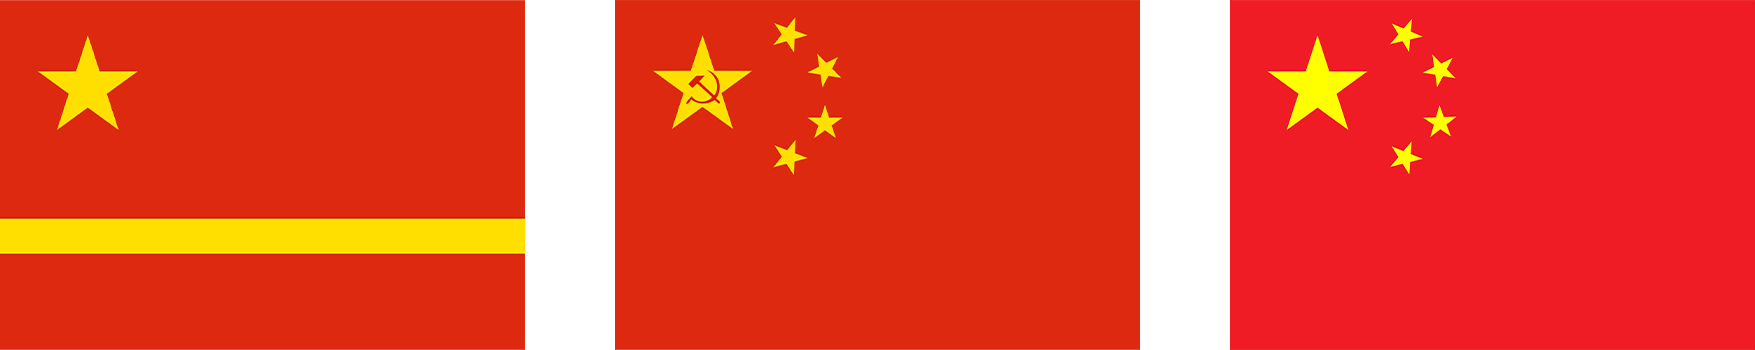 Як створювався прапор Китайської Народної Республіки? Історія прапору Китаю.